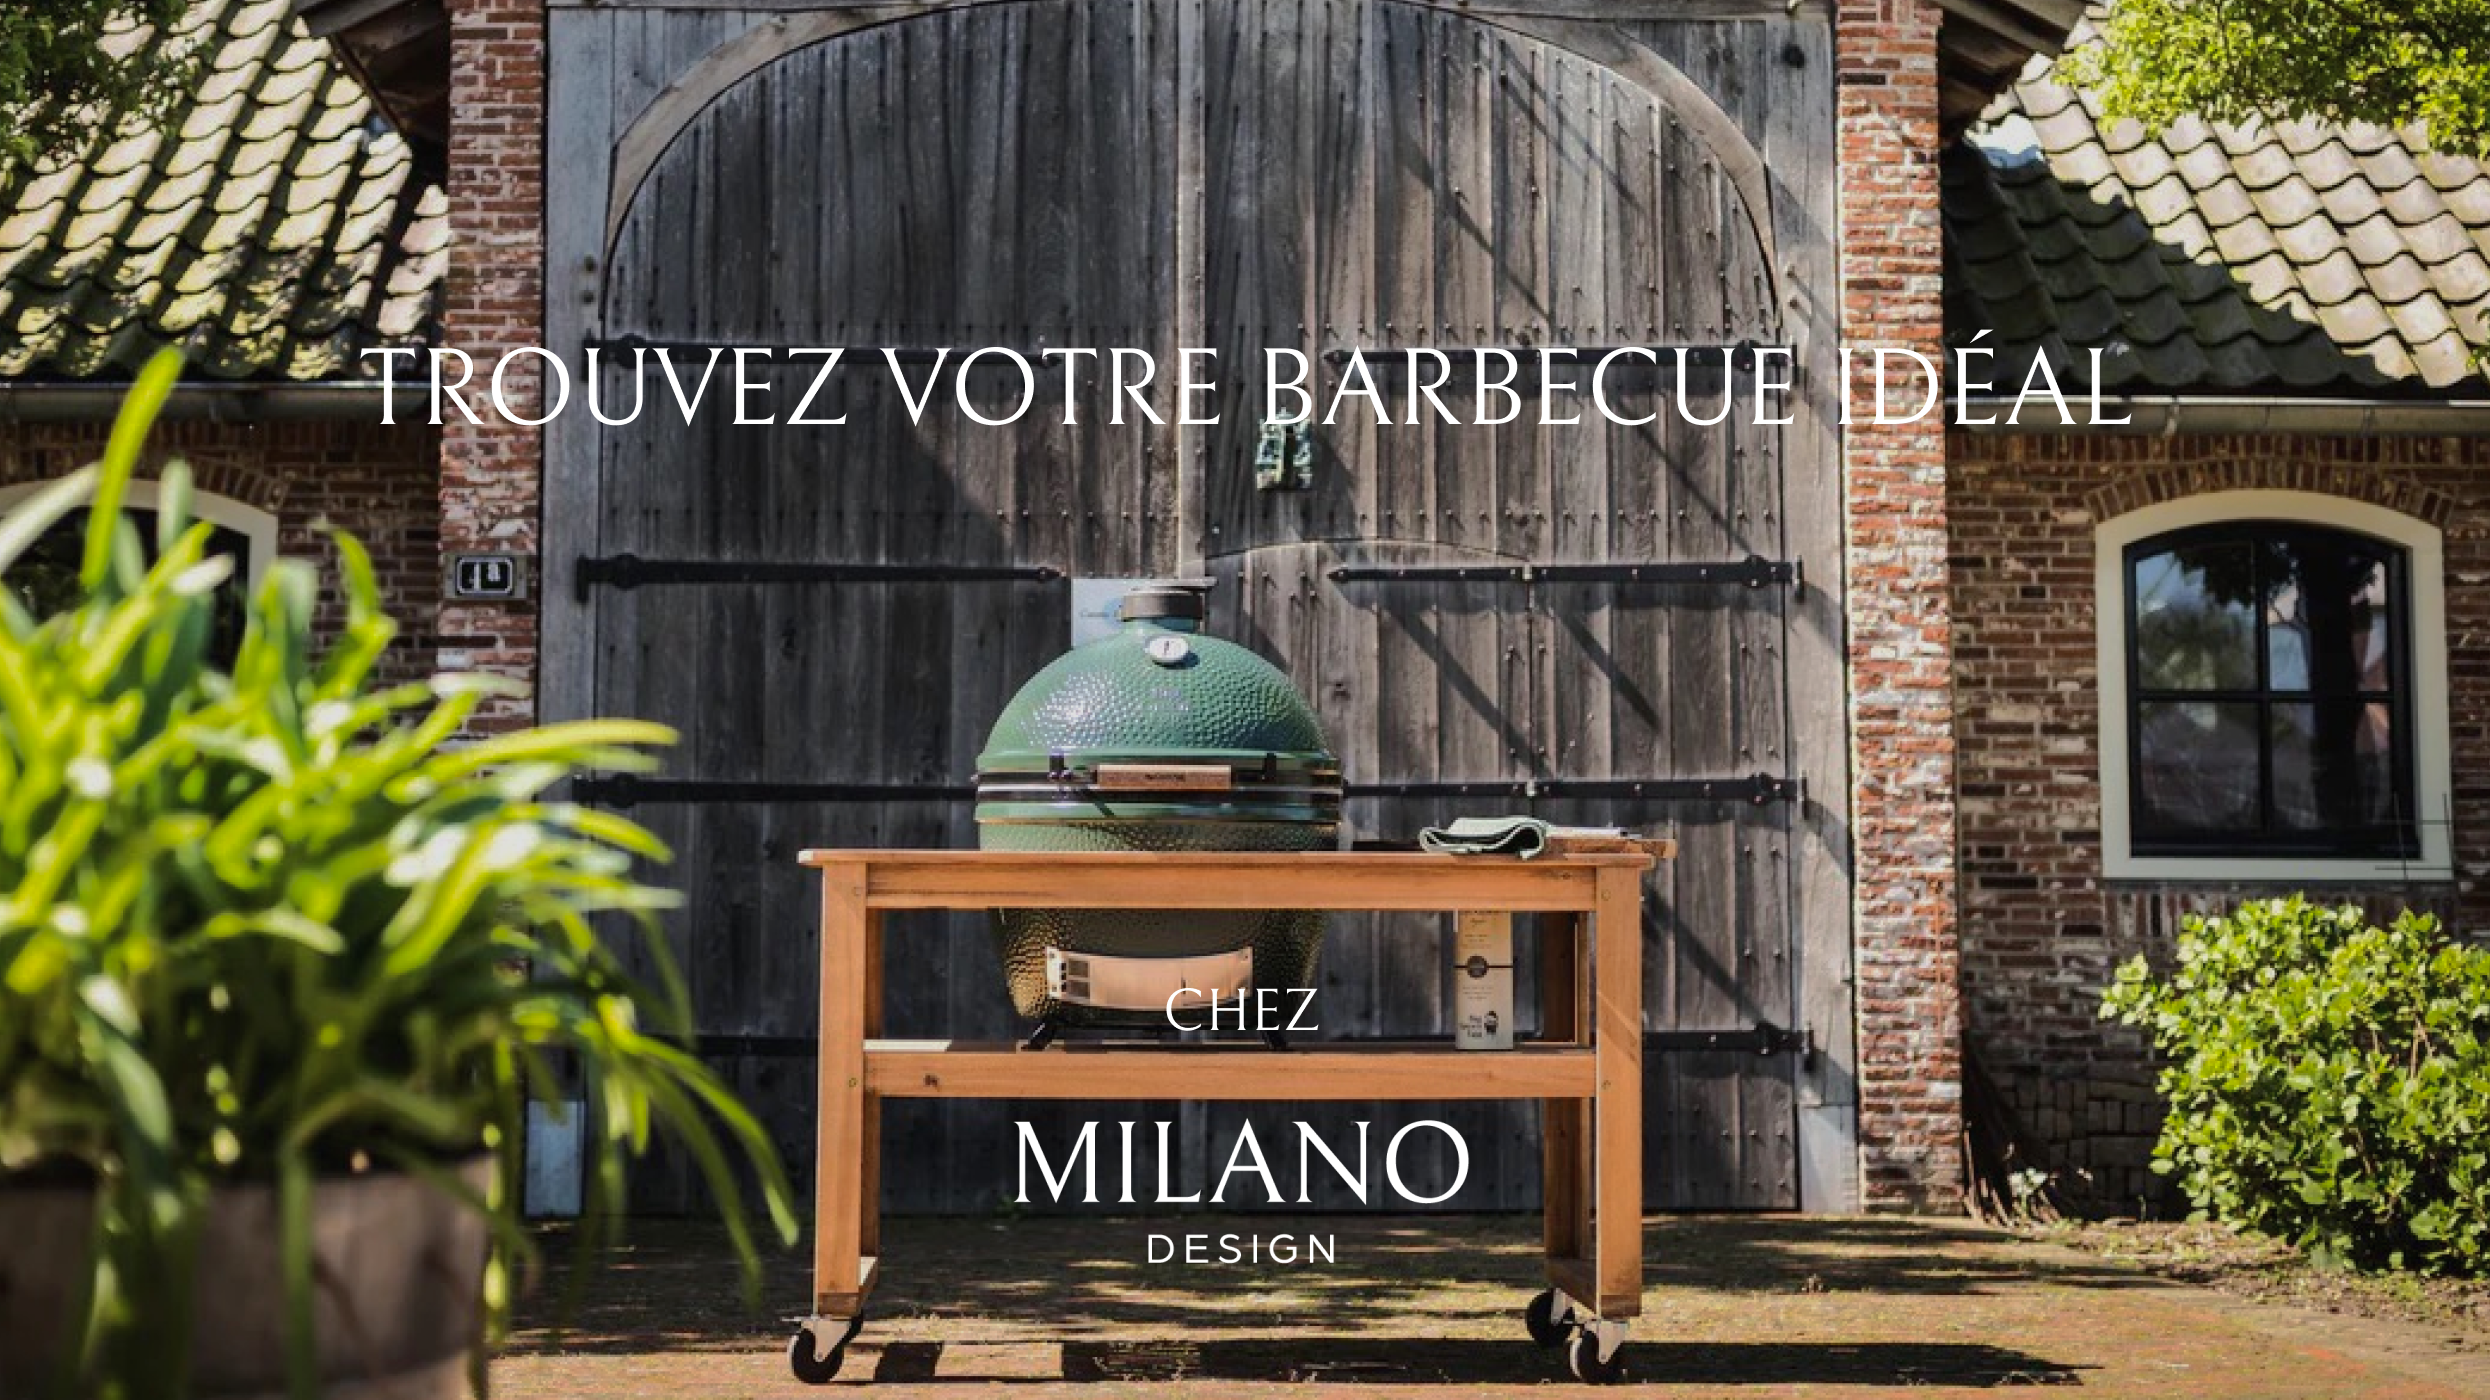 Retrouvez votre barbecue idéal chez MILANO DESIGN